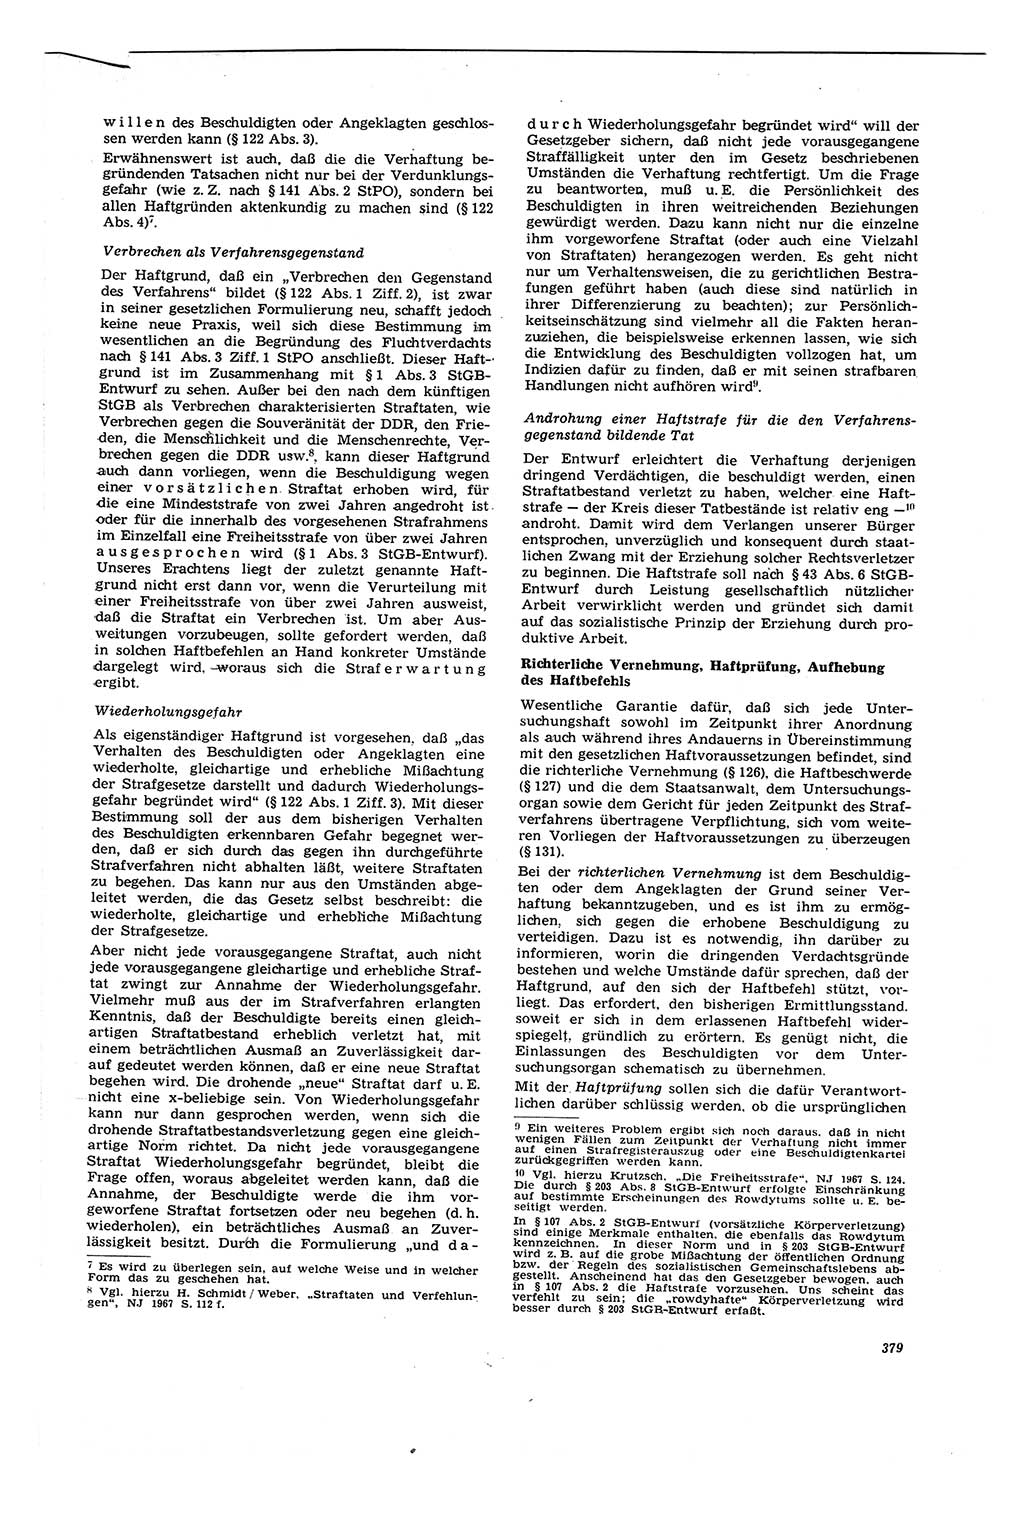 Neue Justiz (NJ), Zeitschrift für Recht und Rechtswissenschaft [Deutsche Demokratische Republik (DDR)], 21. Jahrgang 1967, Seite 379 (NJ DDR 1967, S. 379)